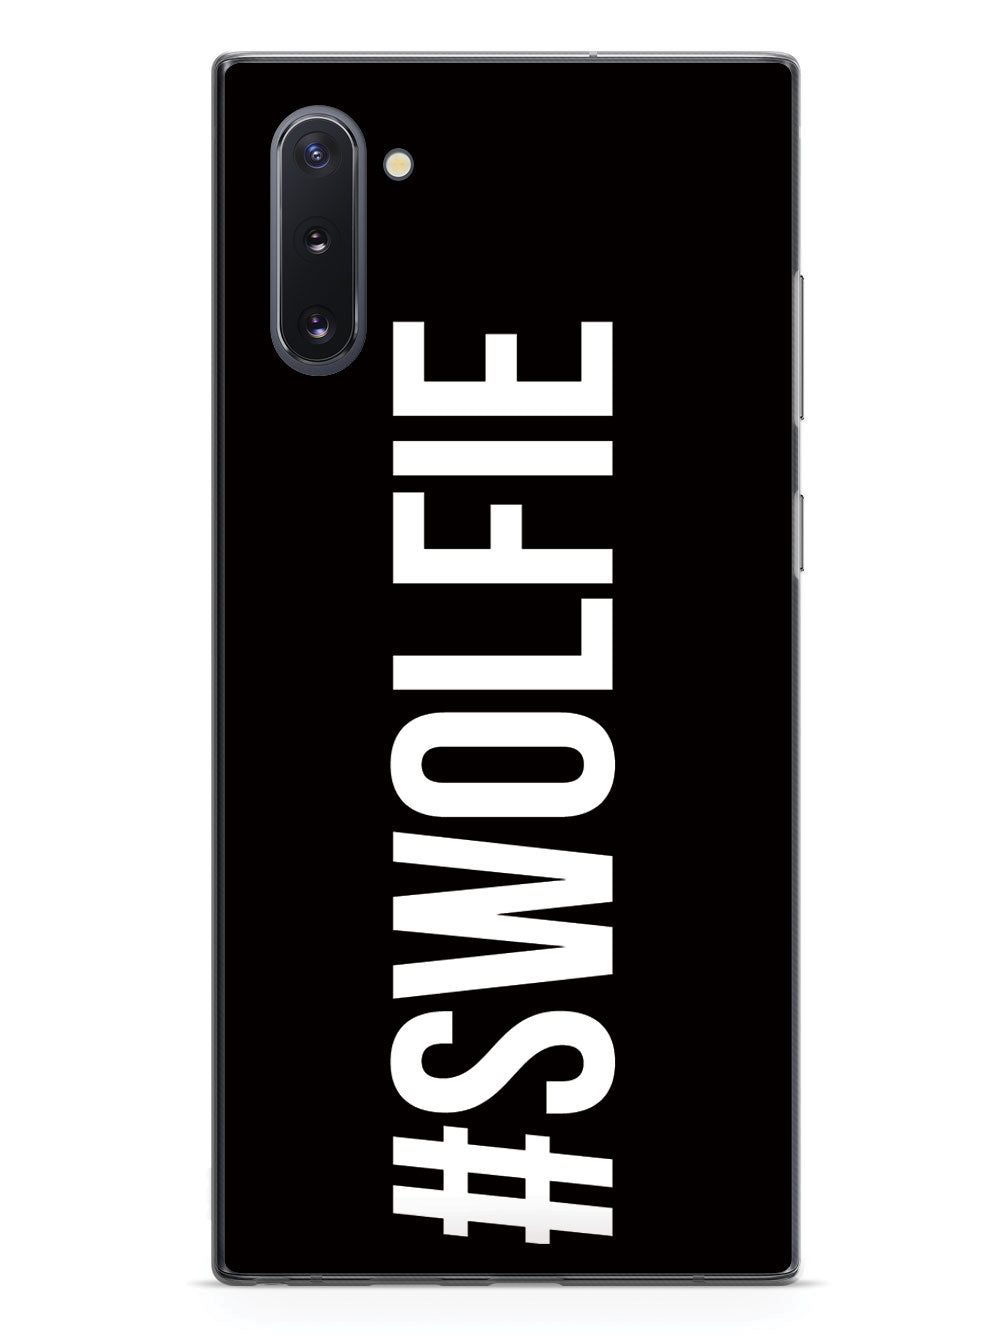 Hashtag #Swolfie Workout Selfie Case